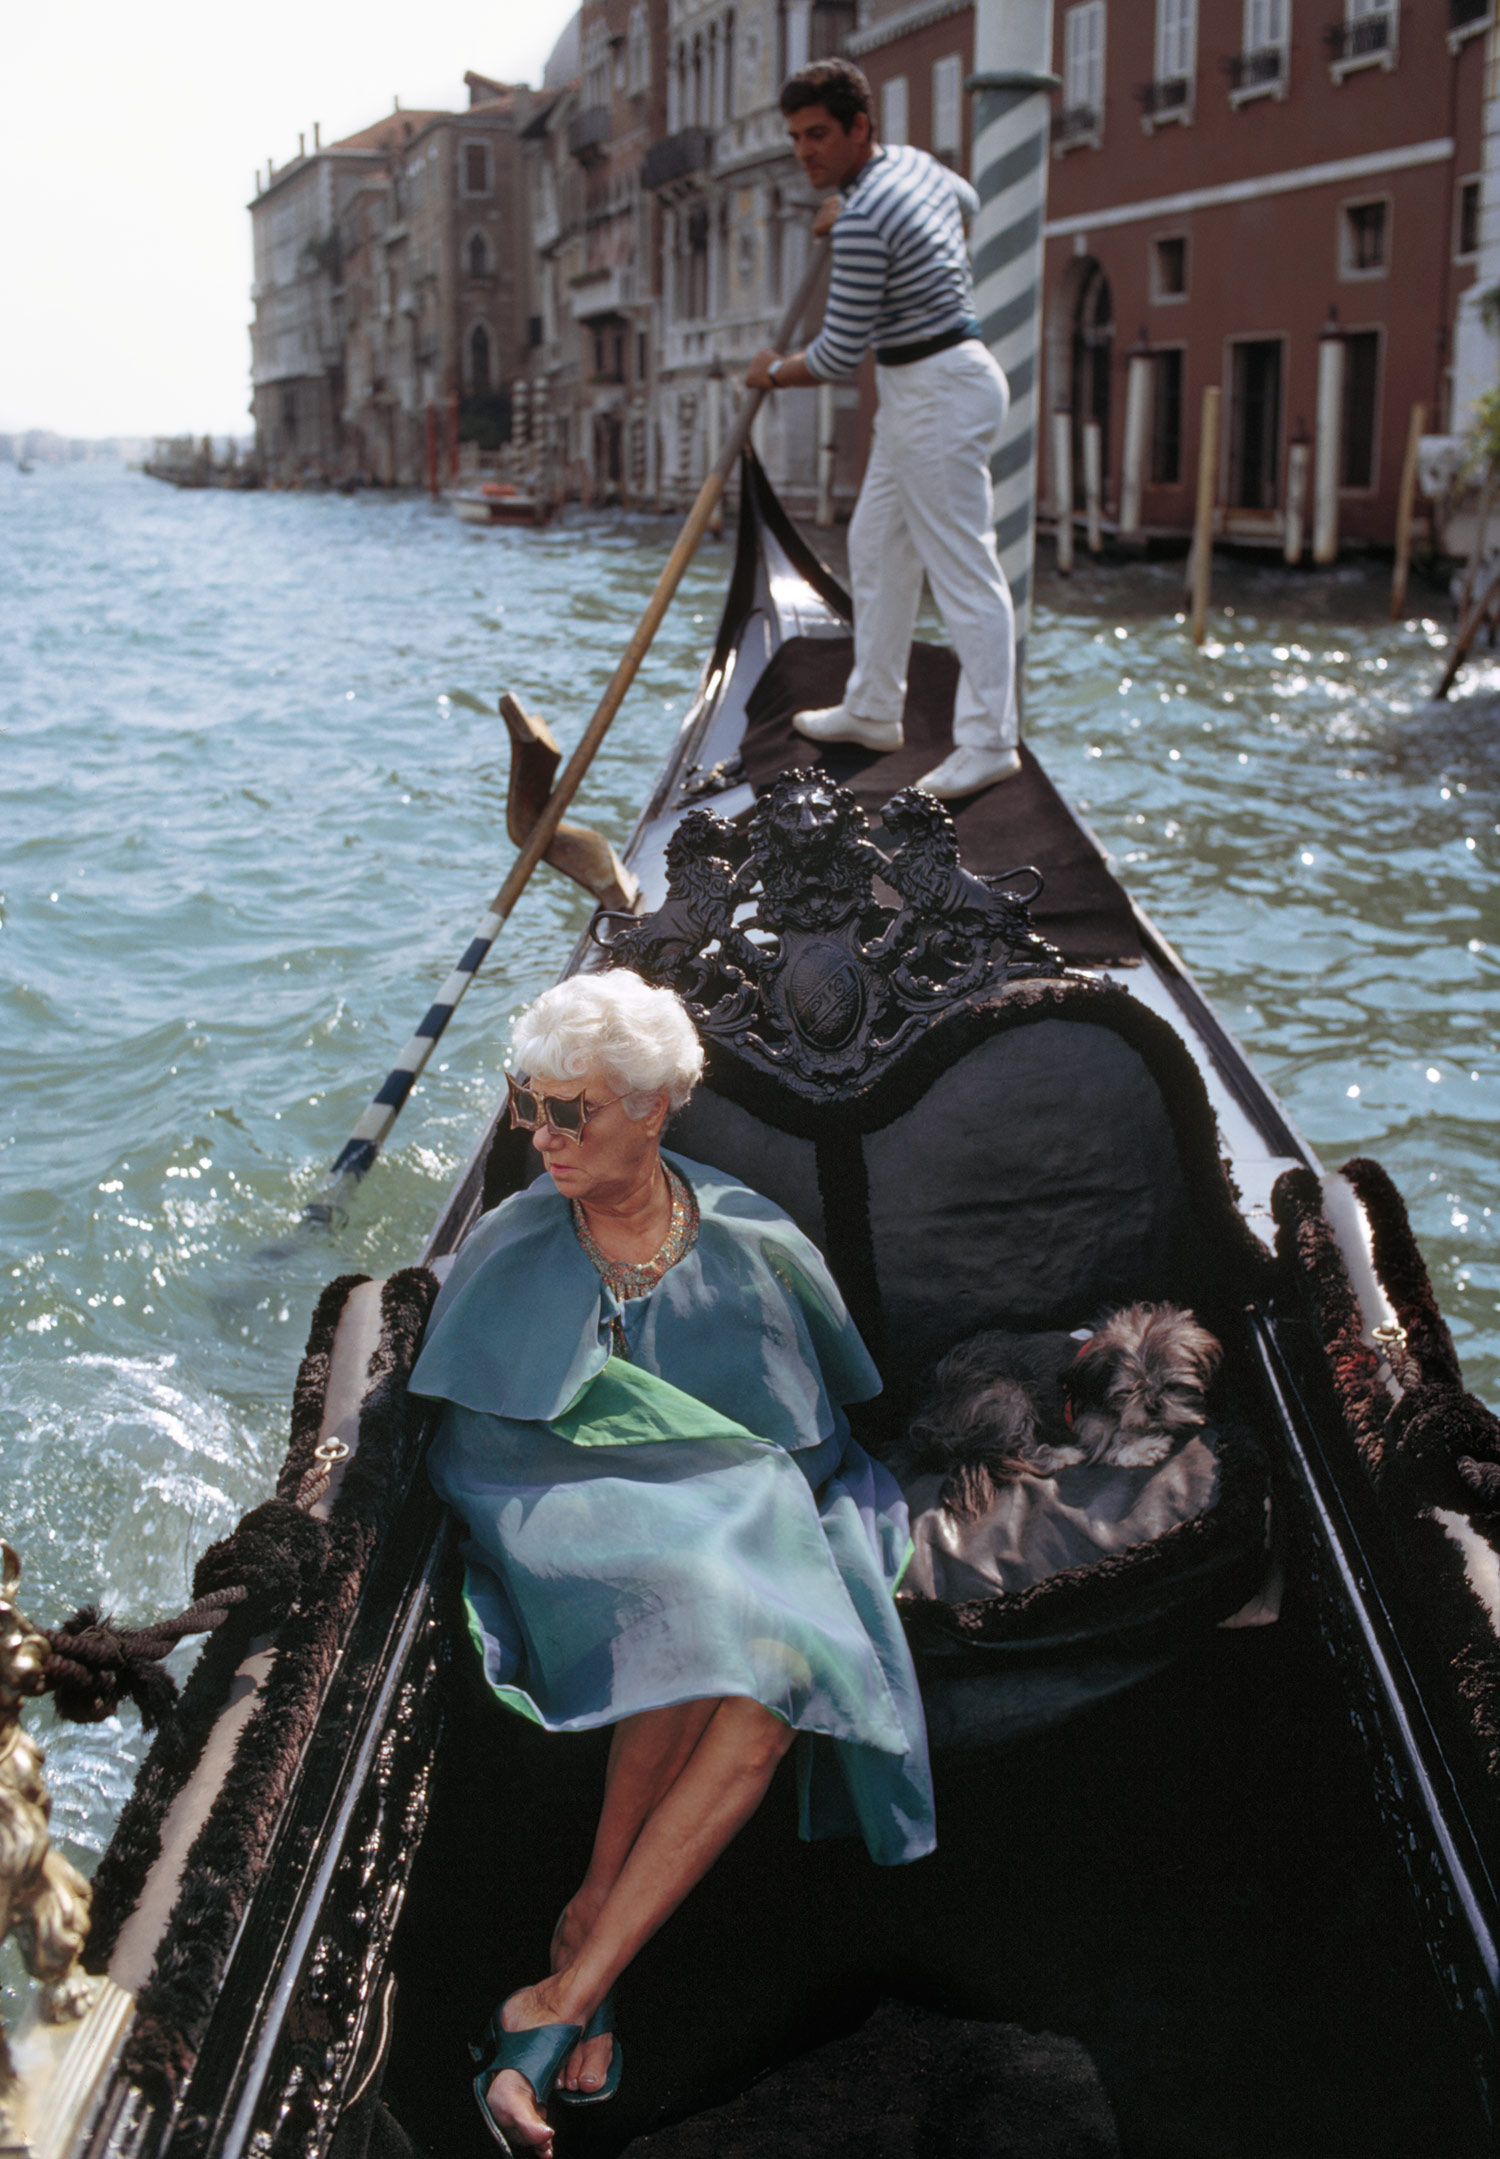 Peggy Guggenheim in gondola, Venezia, 1968. Photo Tony Vaccaro / Tony Vaccaro Archives
